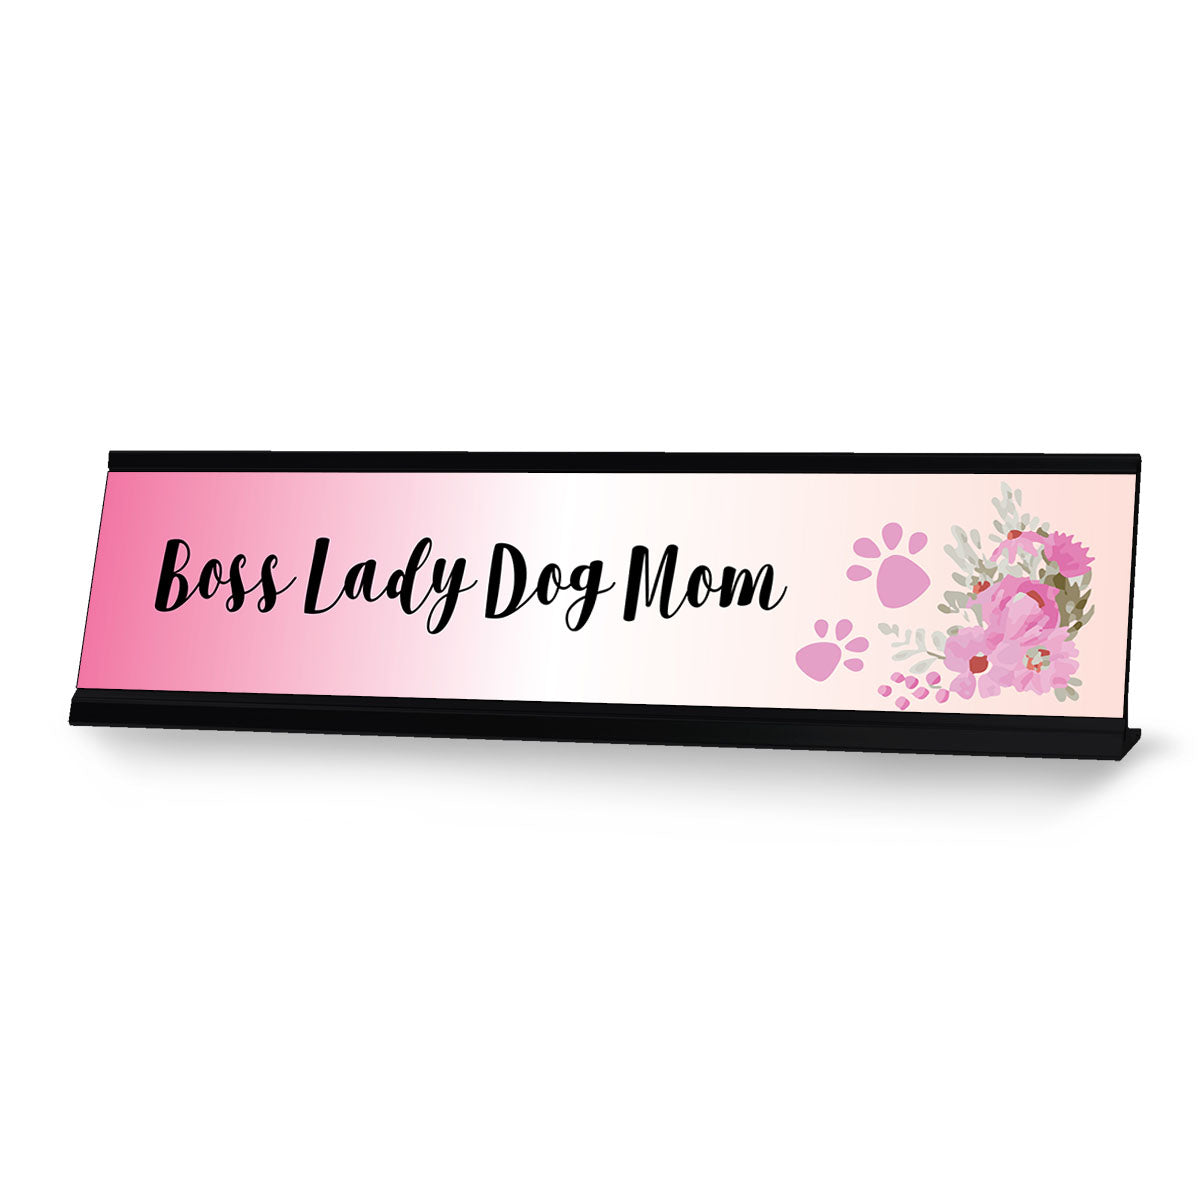 Boss Lady Dog Mom, Pink Designer Desk Sign Nameplate (2 x 8")